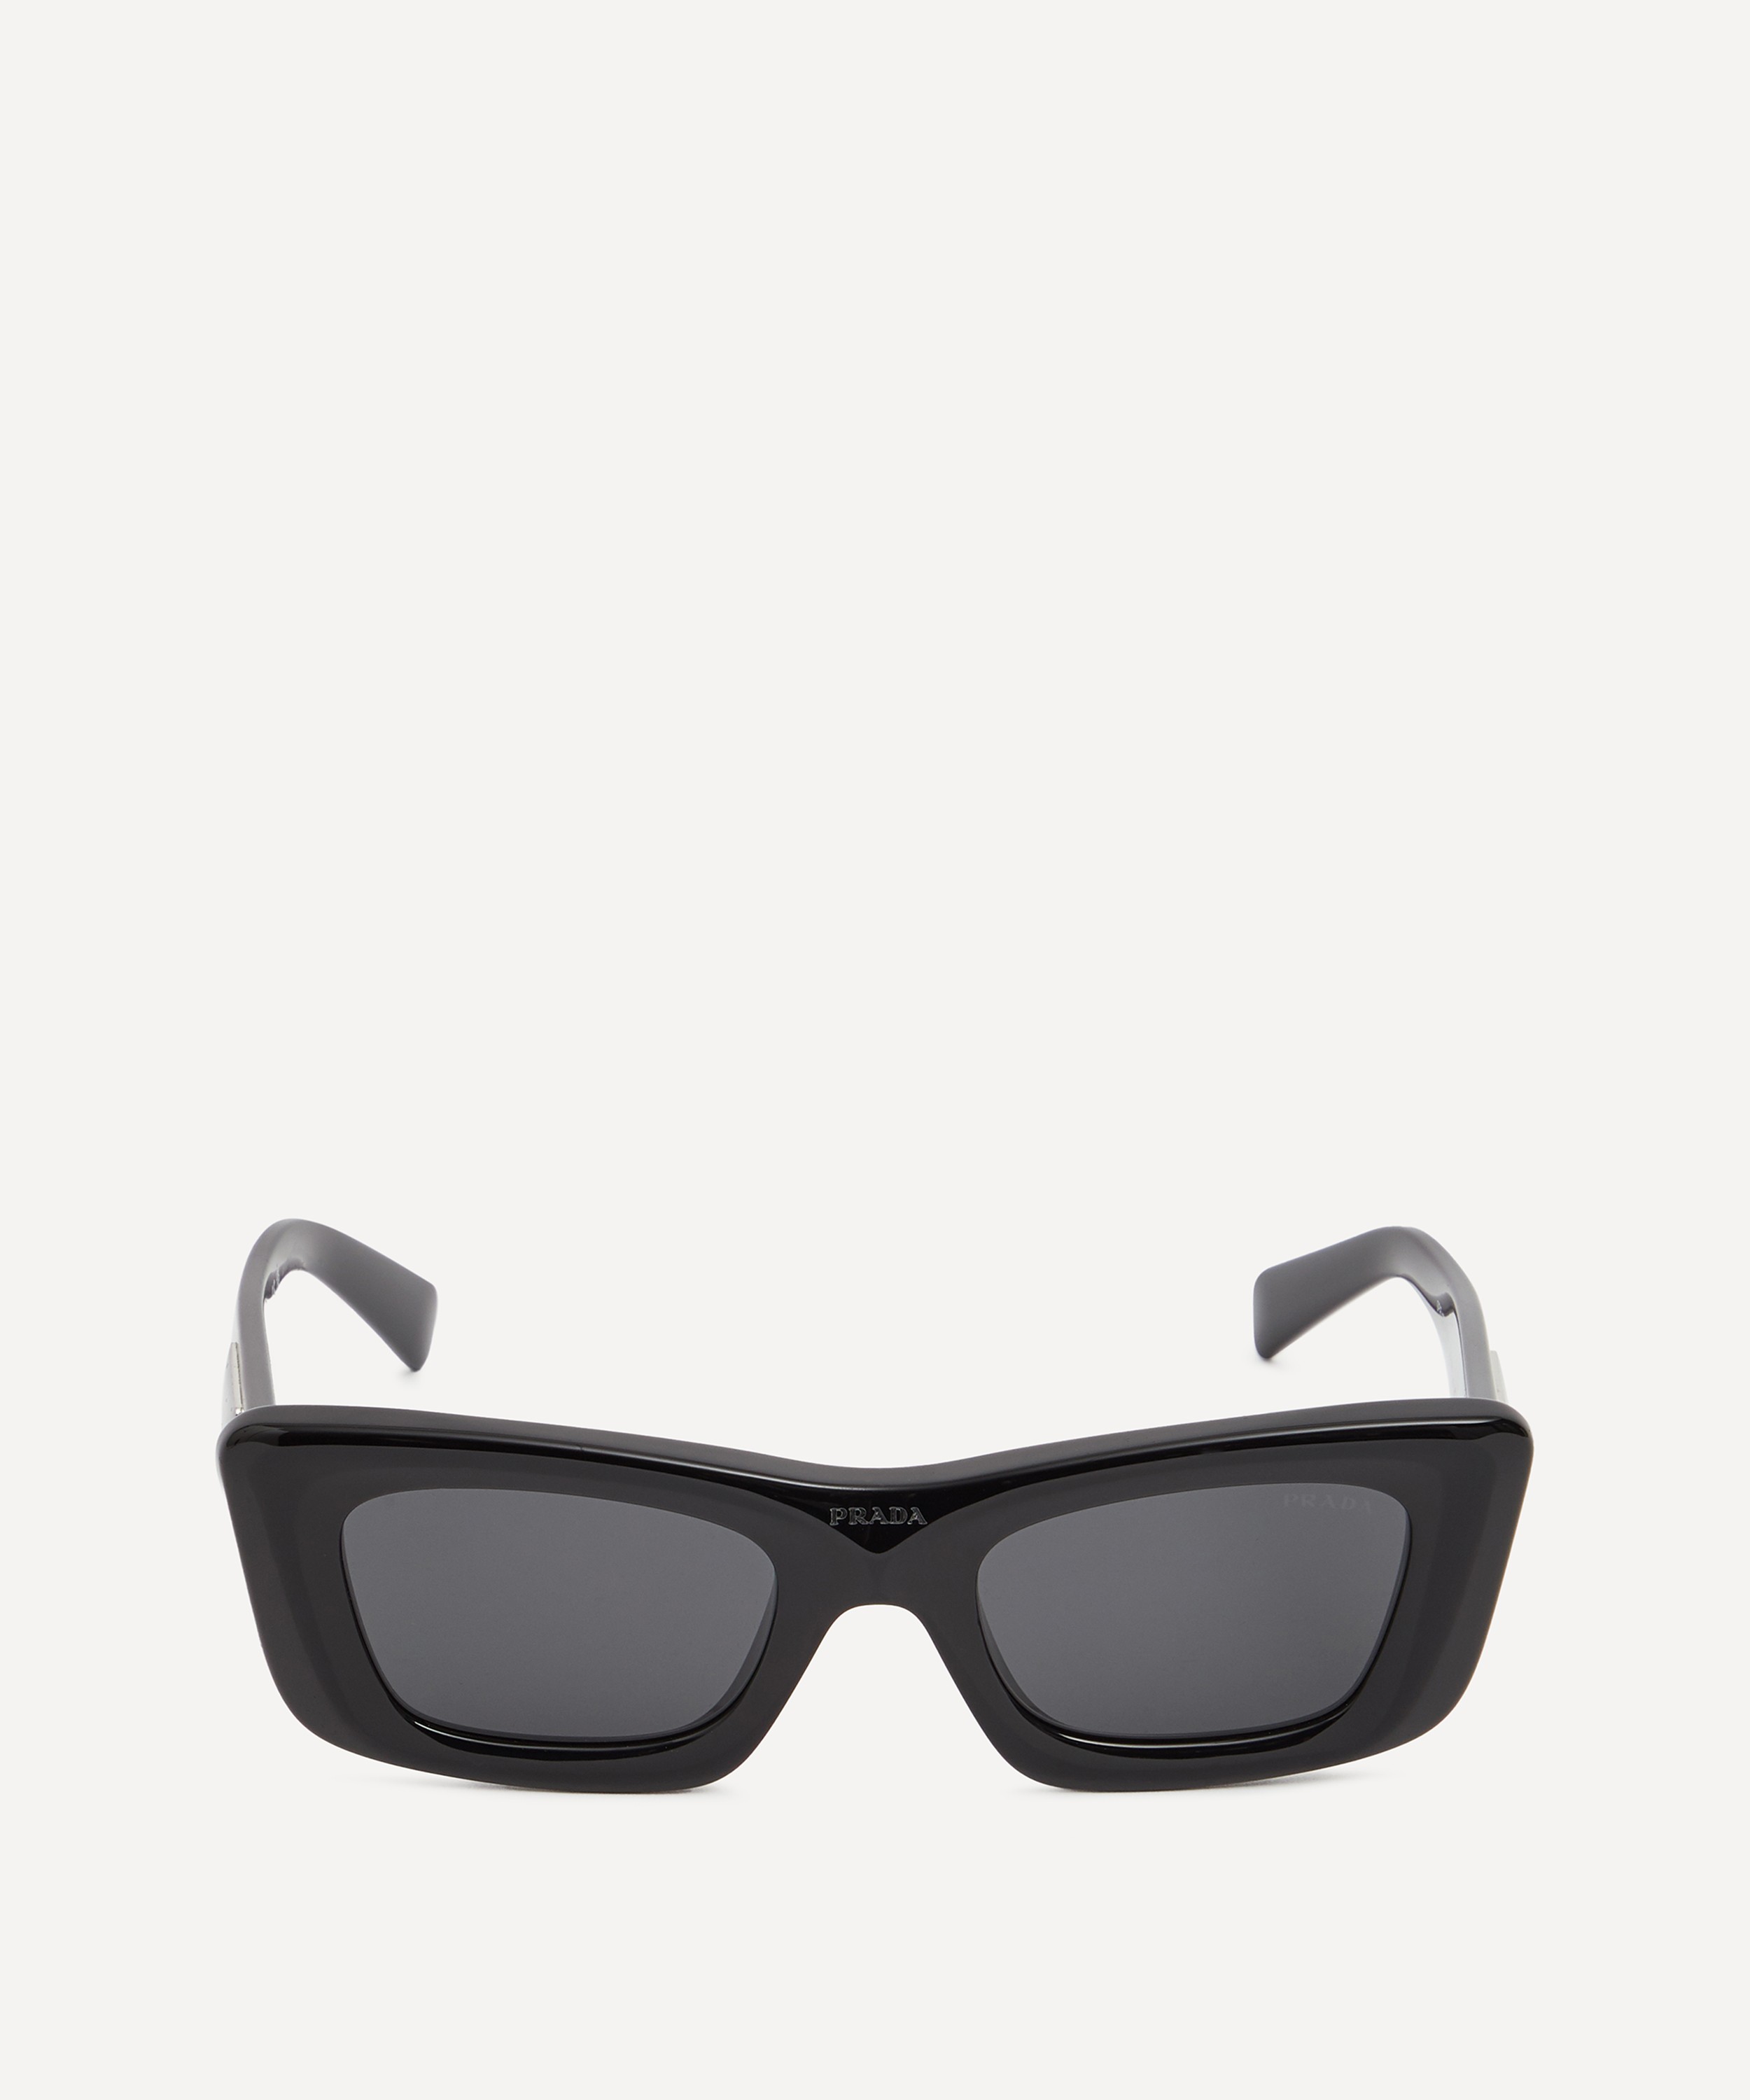 Prada Rectangular Sunglasses